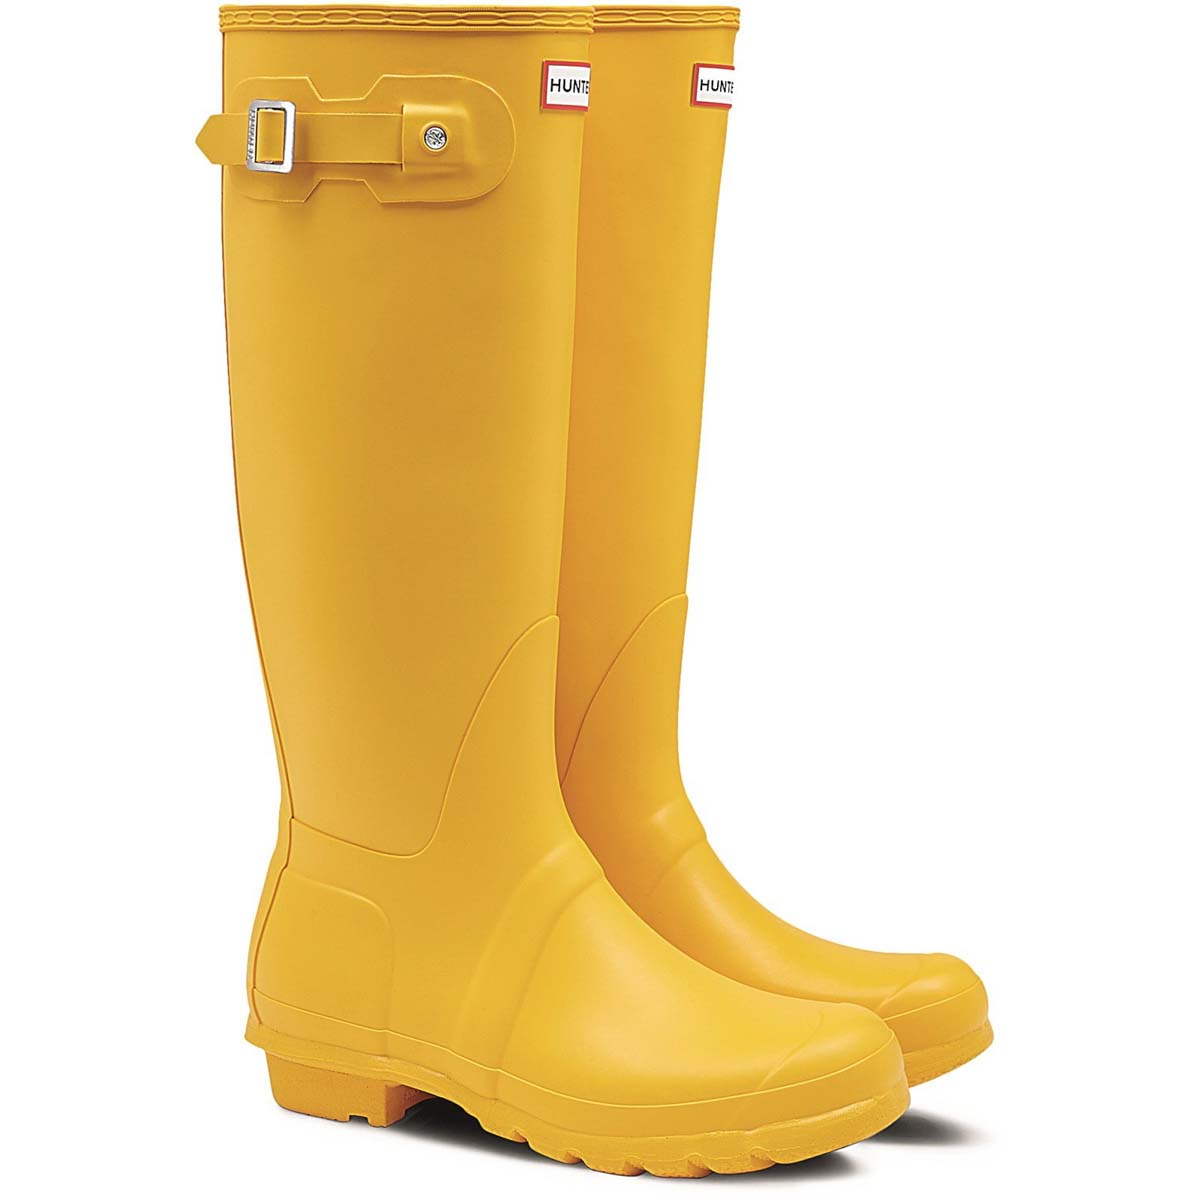 Hunter - Original Tall (Yellow) Wft1000Rma In Size 7 In Plain Yellow